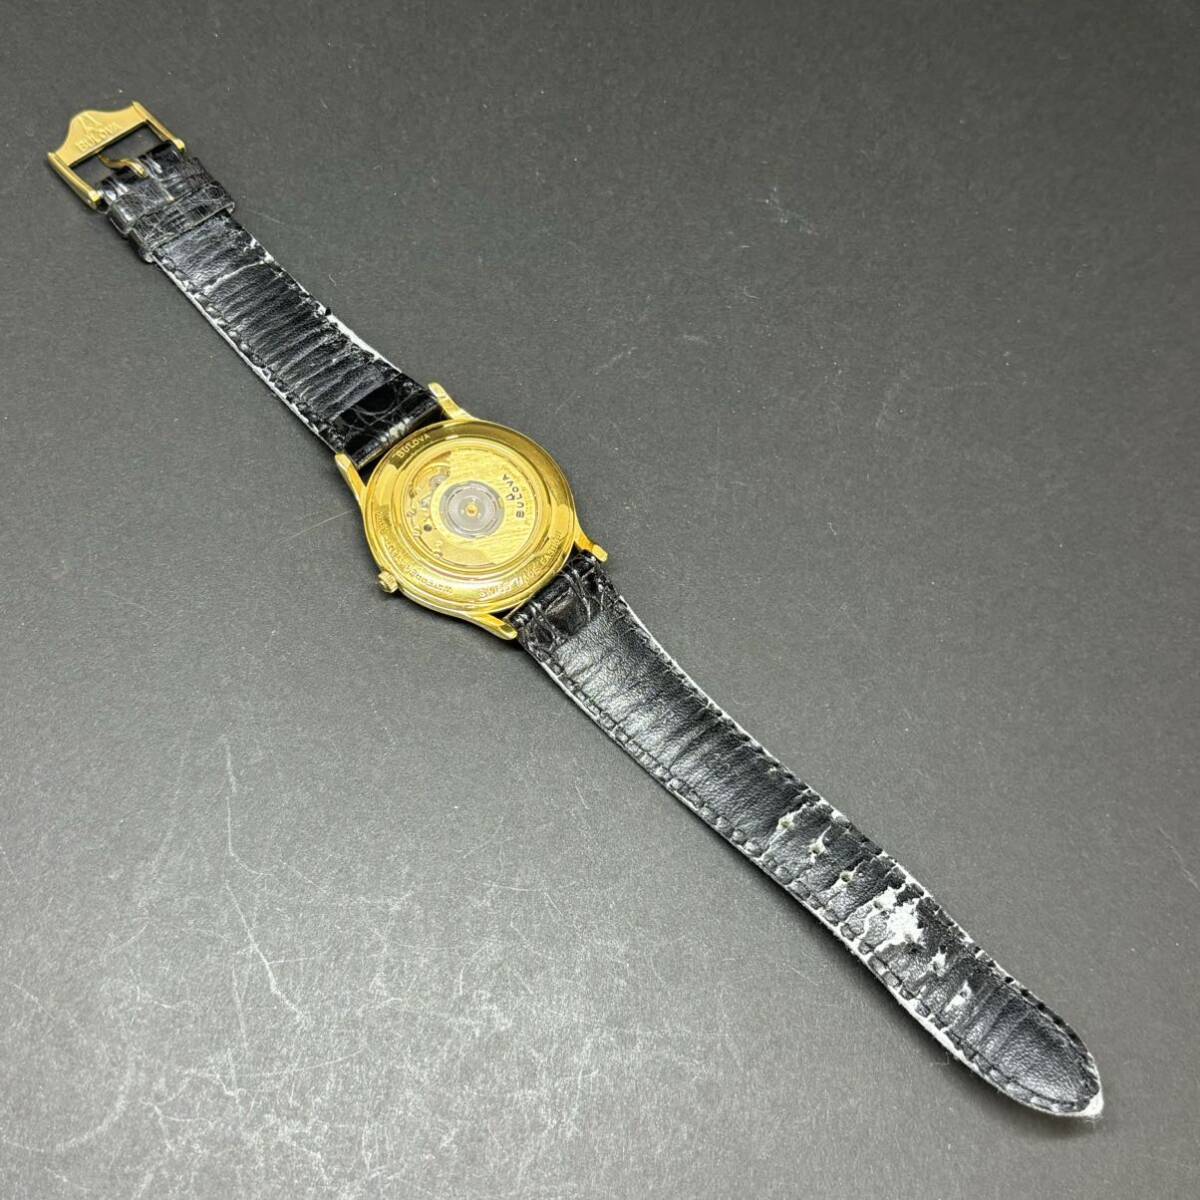 24C061 Broba BULOVA EA311011 самозаводящиеся часы AT автомат обратная сторона ske шампанское циферблат Date кожаный ремень мужские наручные часы 1 иен ~